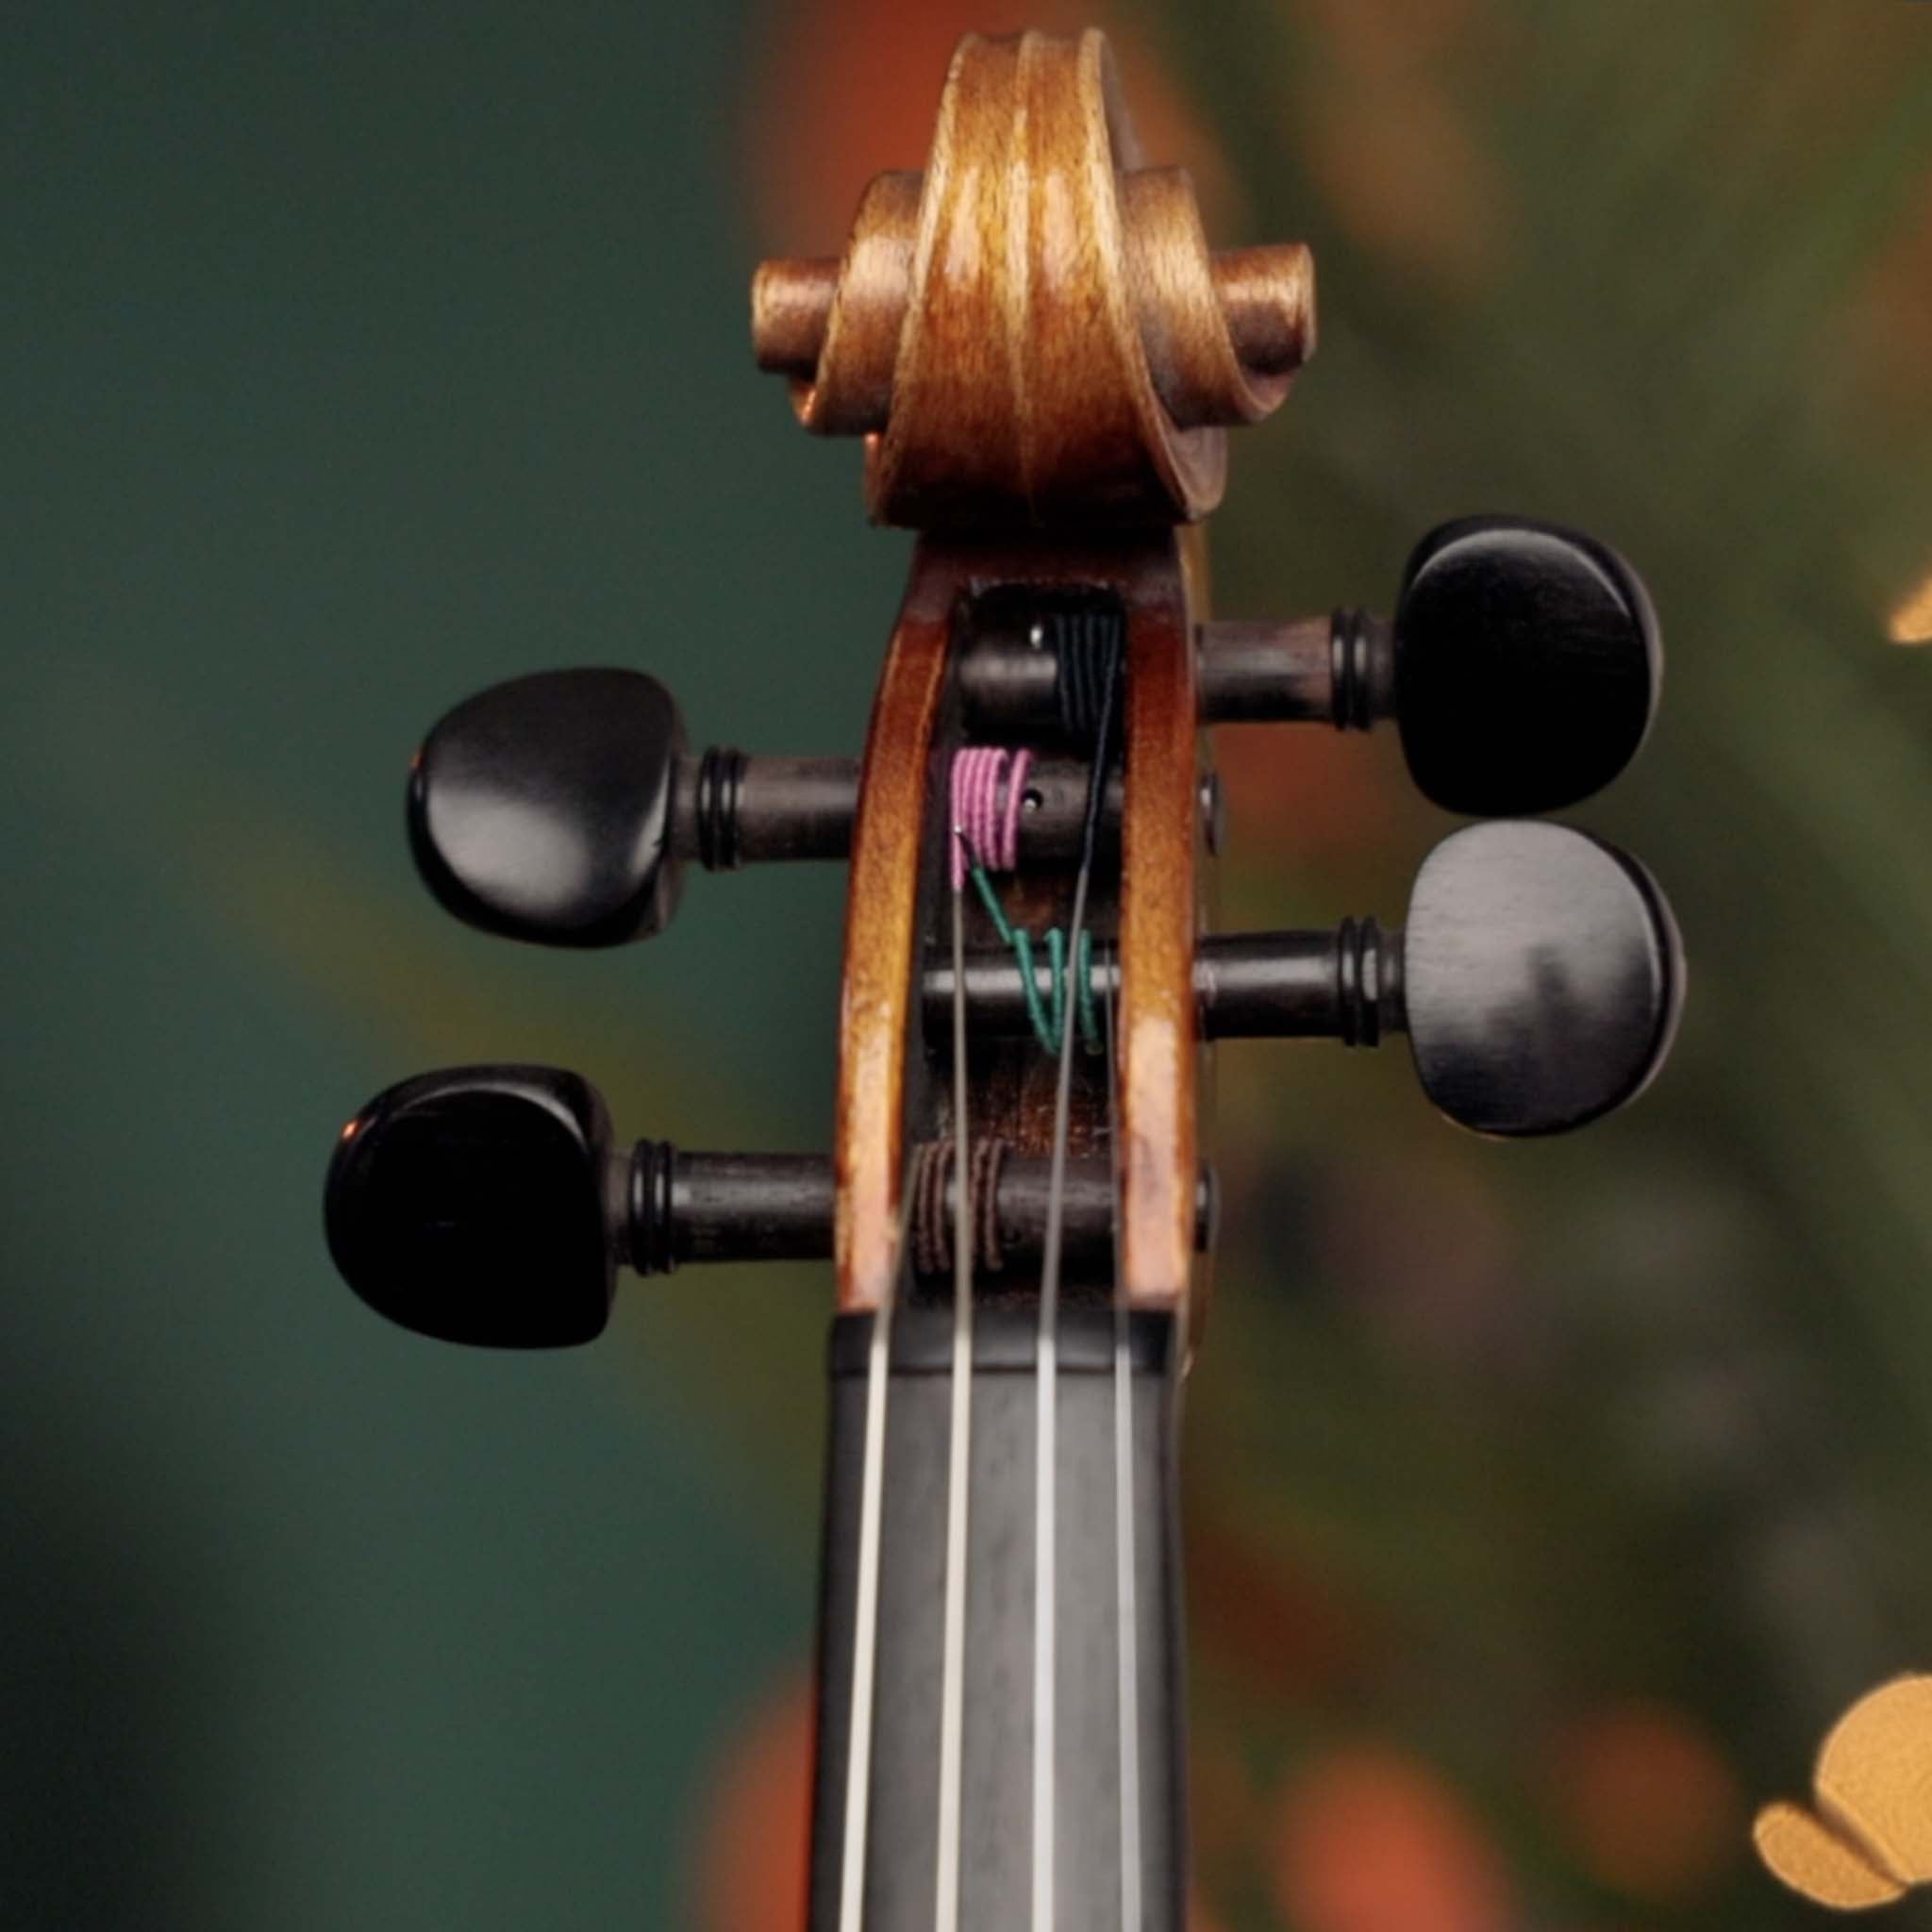 Pirastro Violino Violin G String